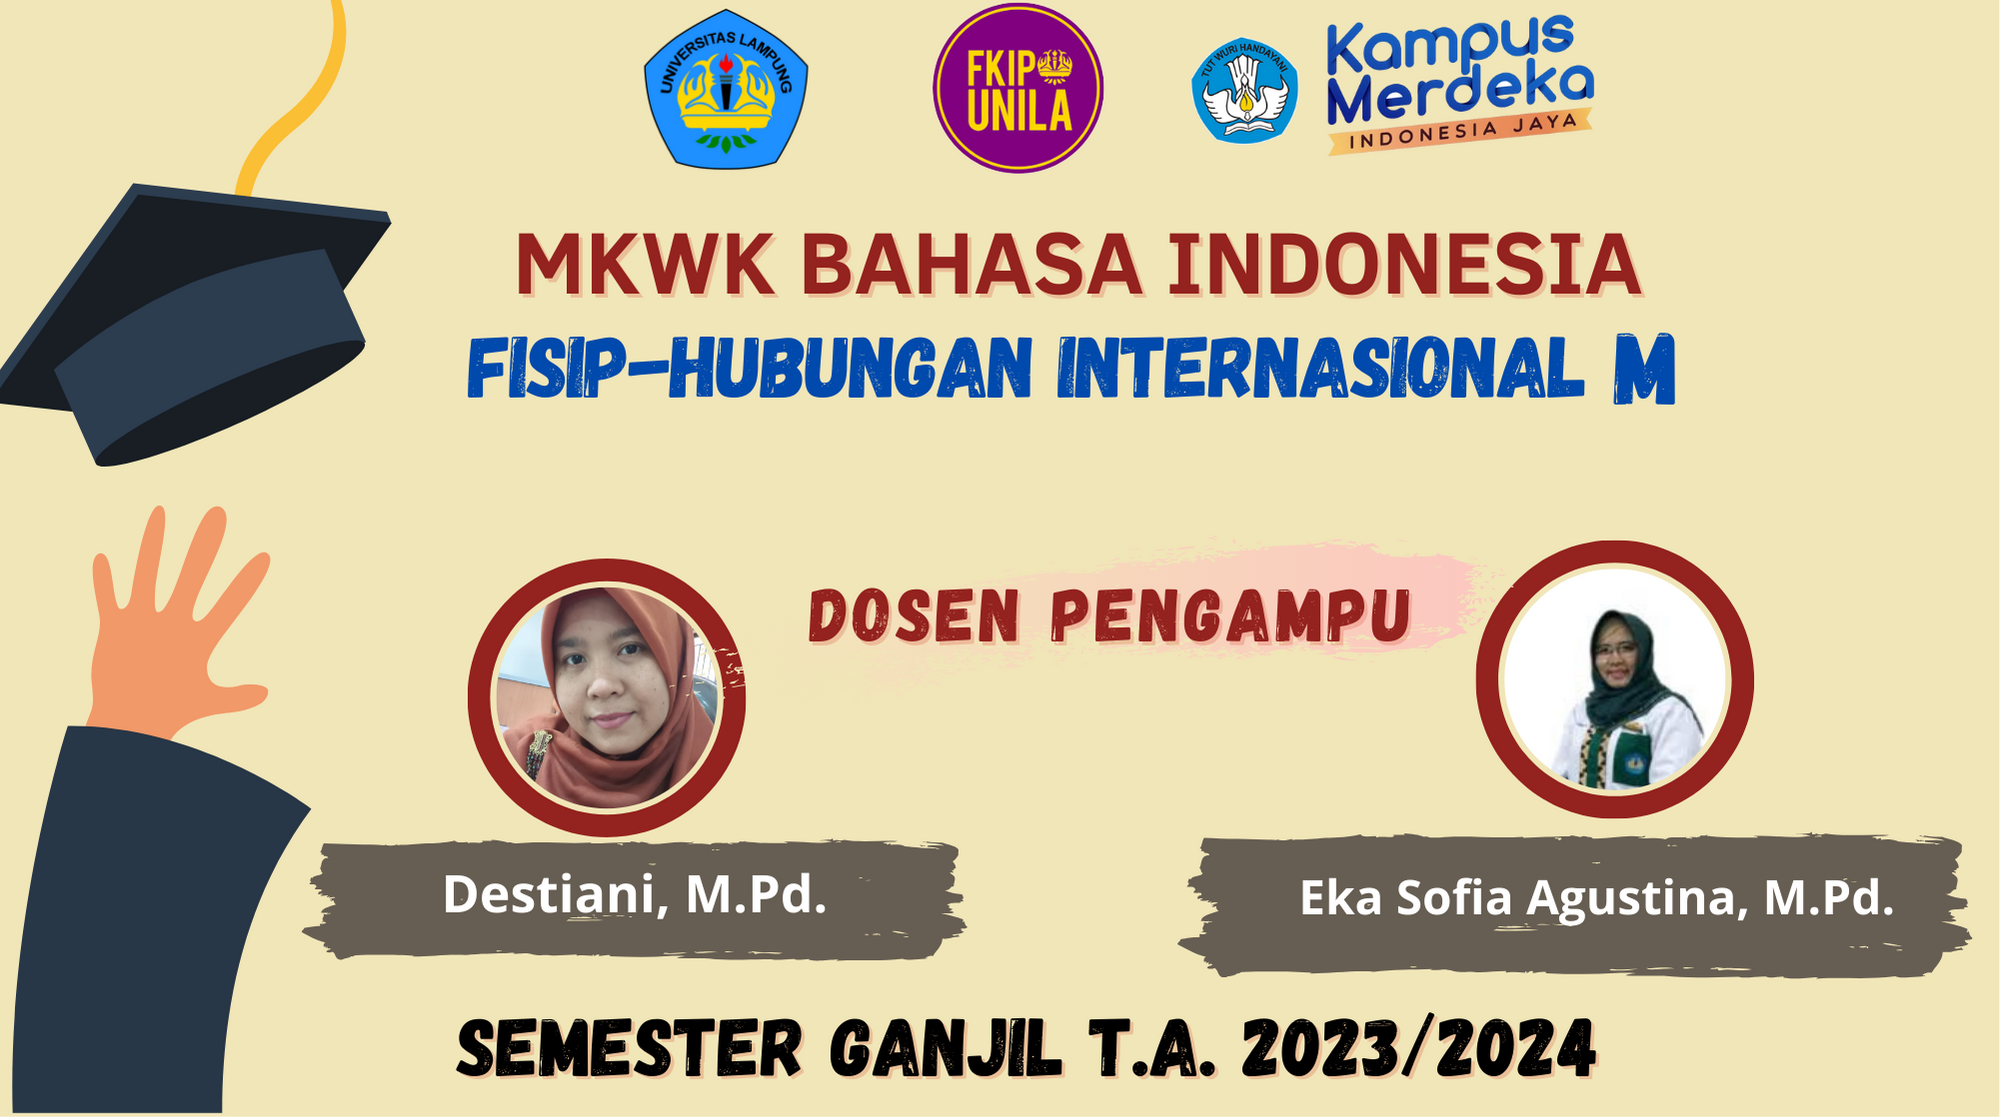 FISIP-HUBUNGAN INTERNASIONAL M-MKWK B. INDONESIA-SEMESTER GANJIL TA. 2023/2024